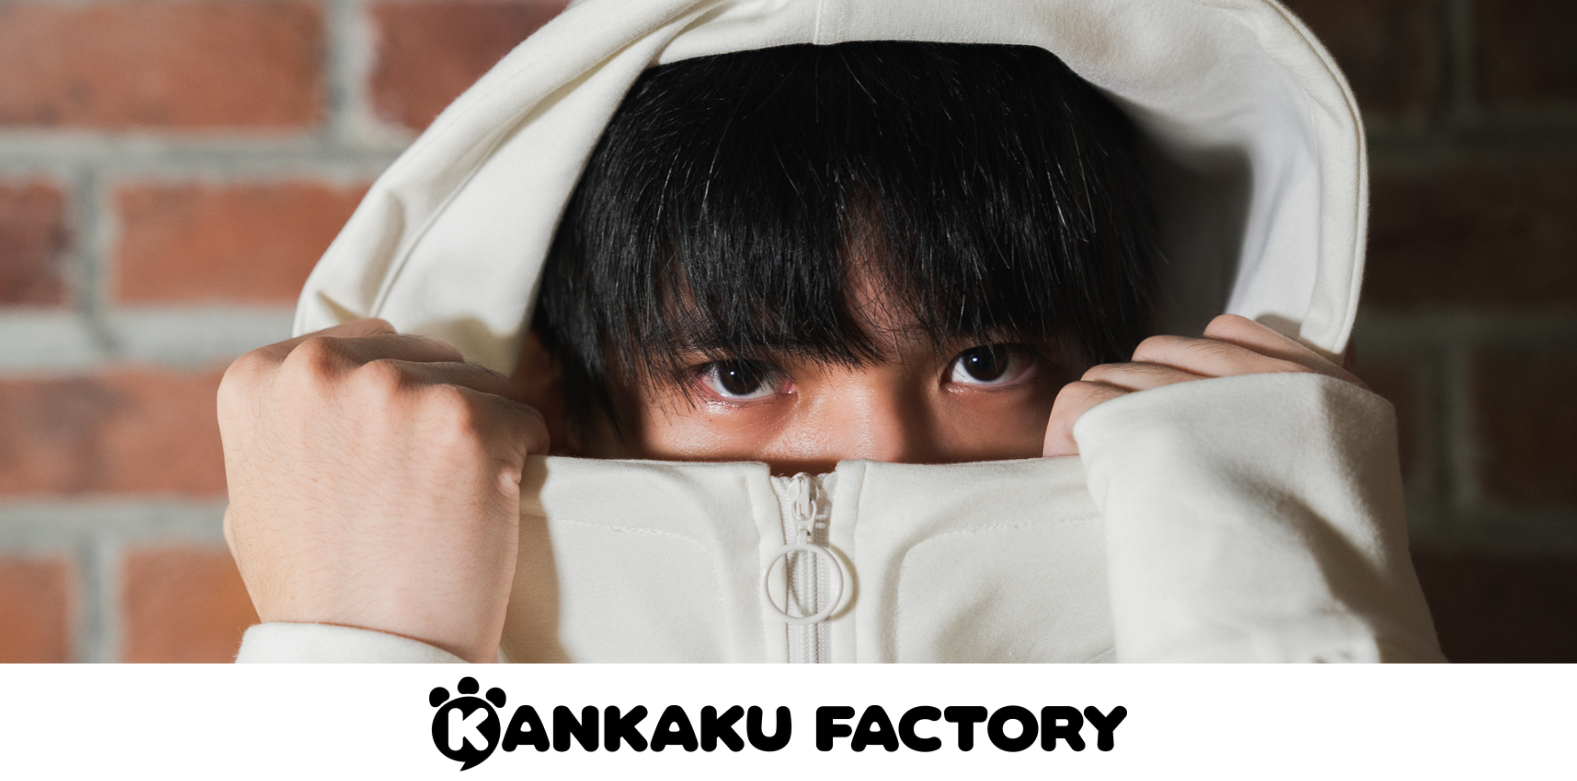 感覚過敏の高校生が着心地を追求する、感覚過敏課題型アパレルブランド「KANKAKU FACTORY」を立ち上げ